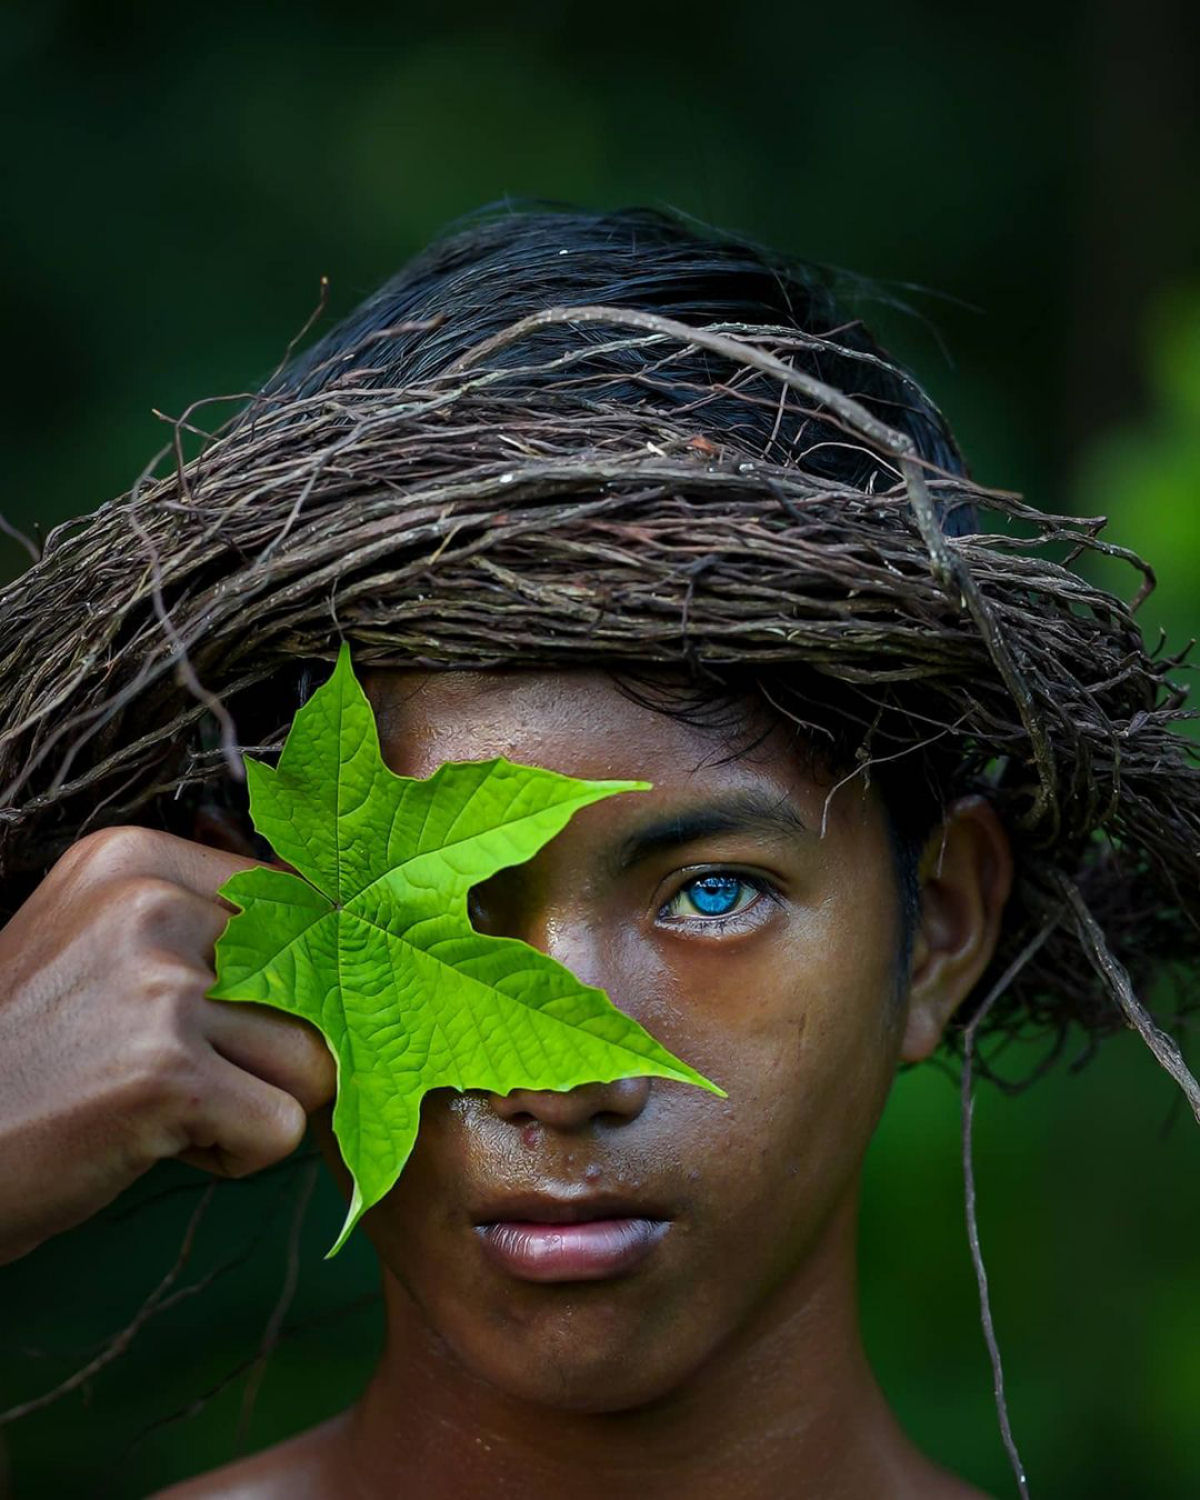 Olhos azuis e brilhantes: as hipnotizantes fotos de uma tribo com uma rara mutação genética 08